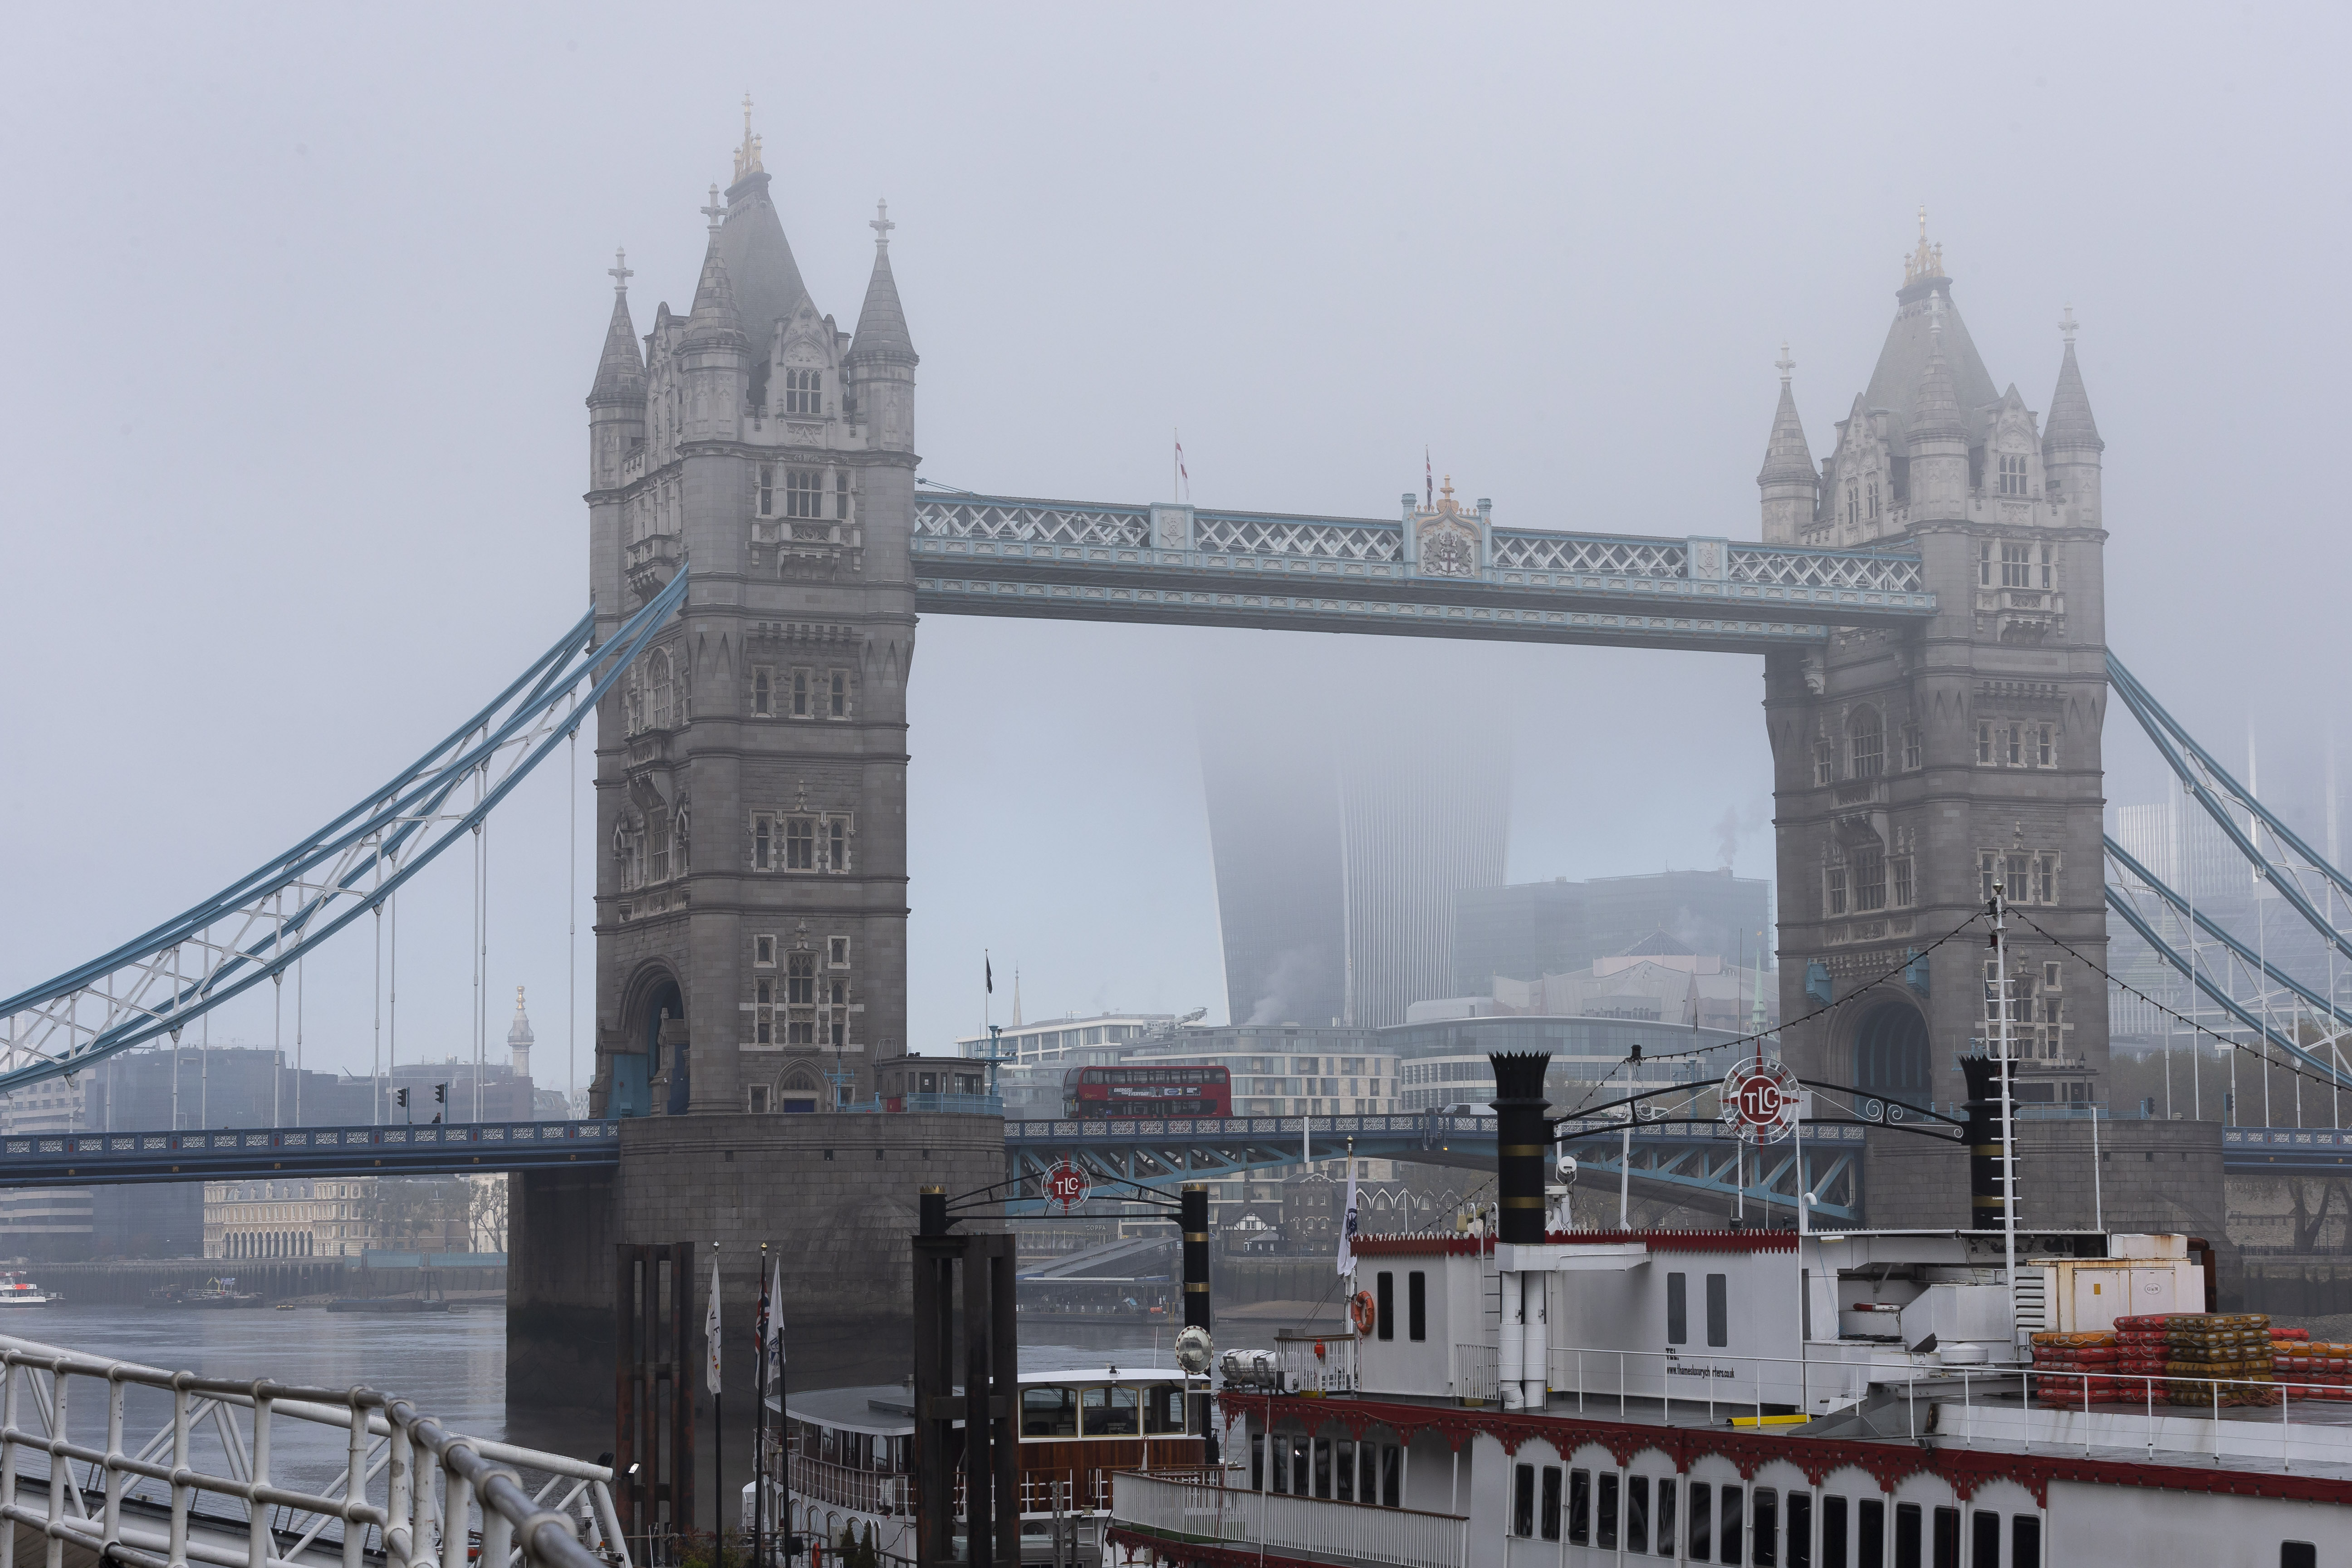   ↑这是11月5日在英国伦敦拍摄的大雾笼罩下的伦敦塔桥